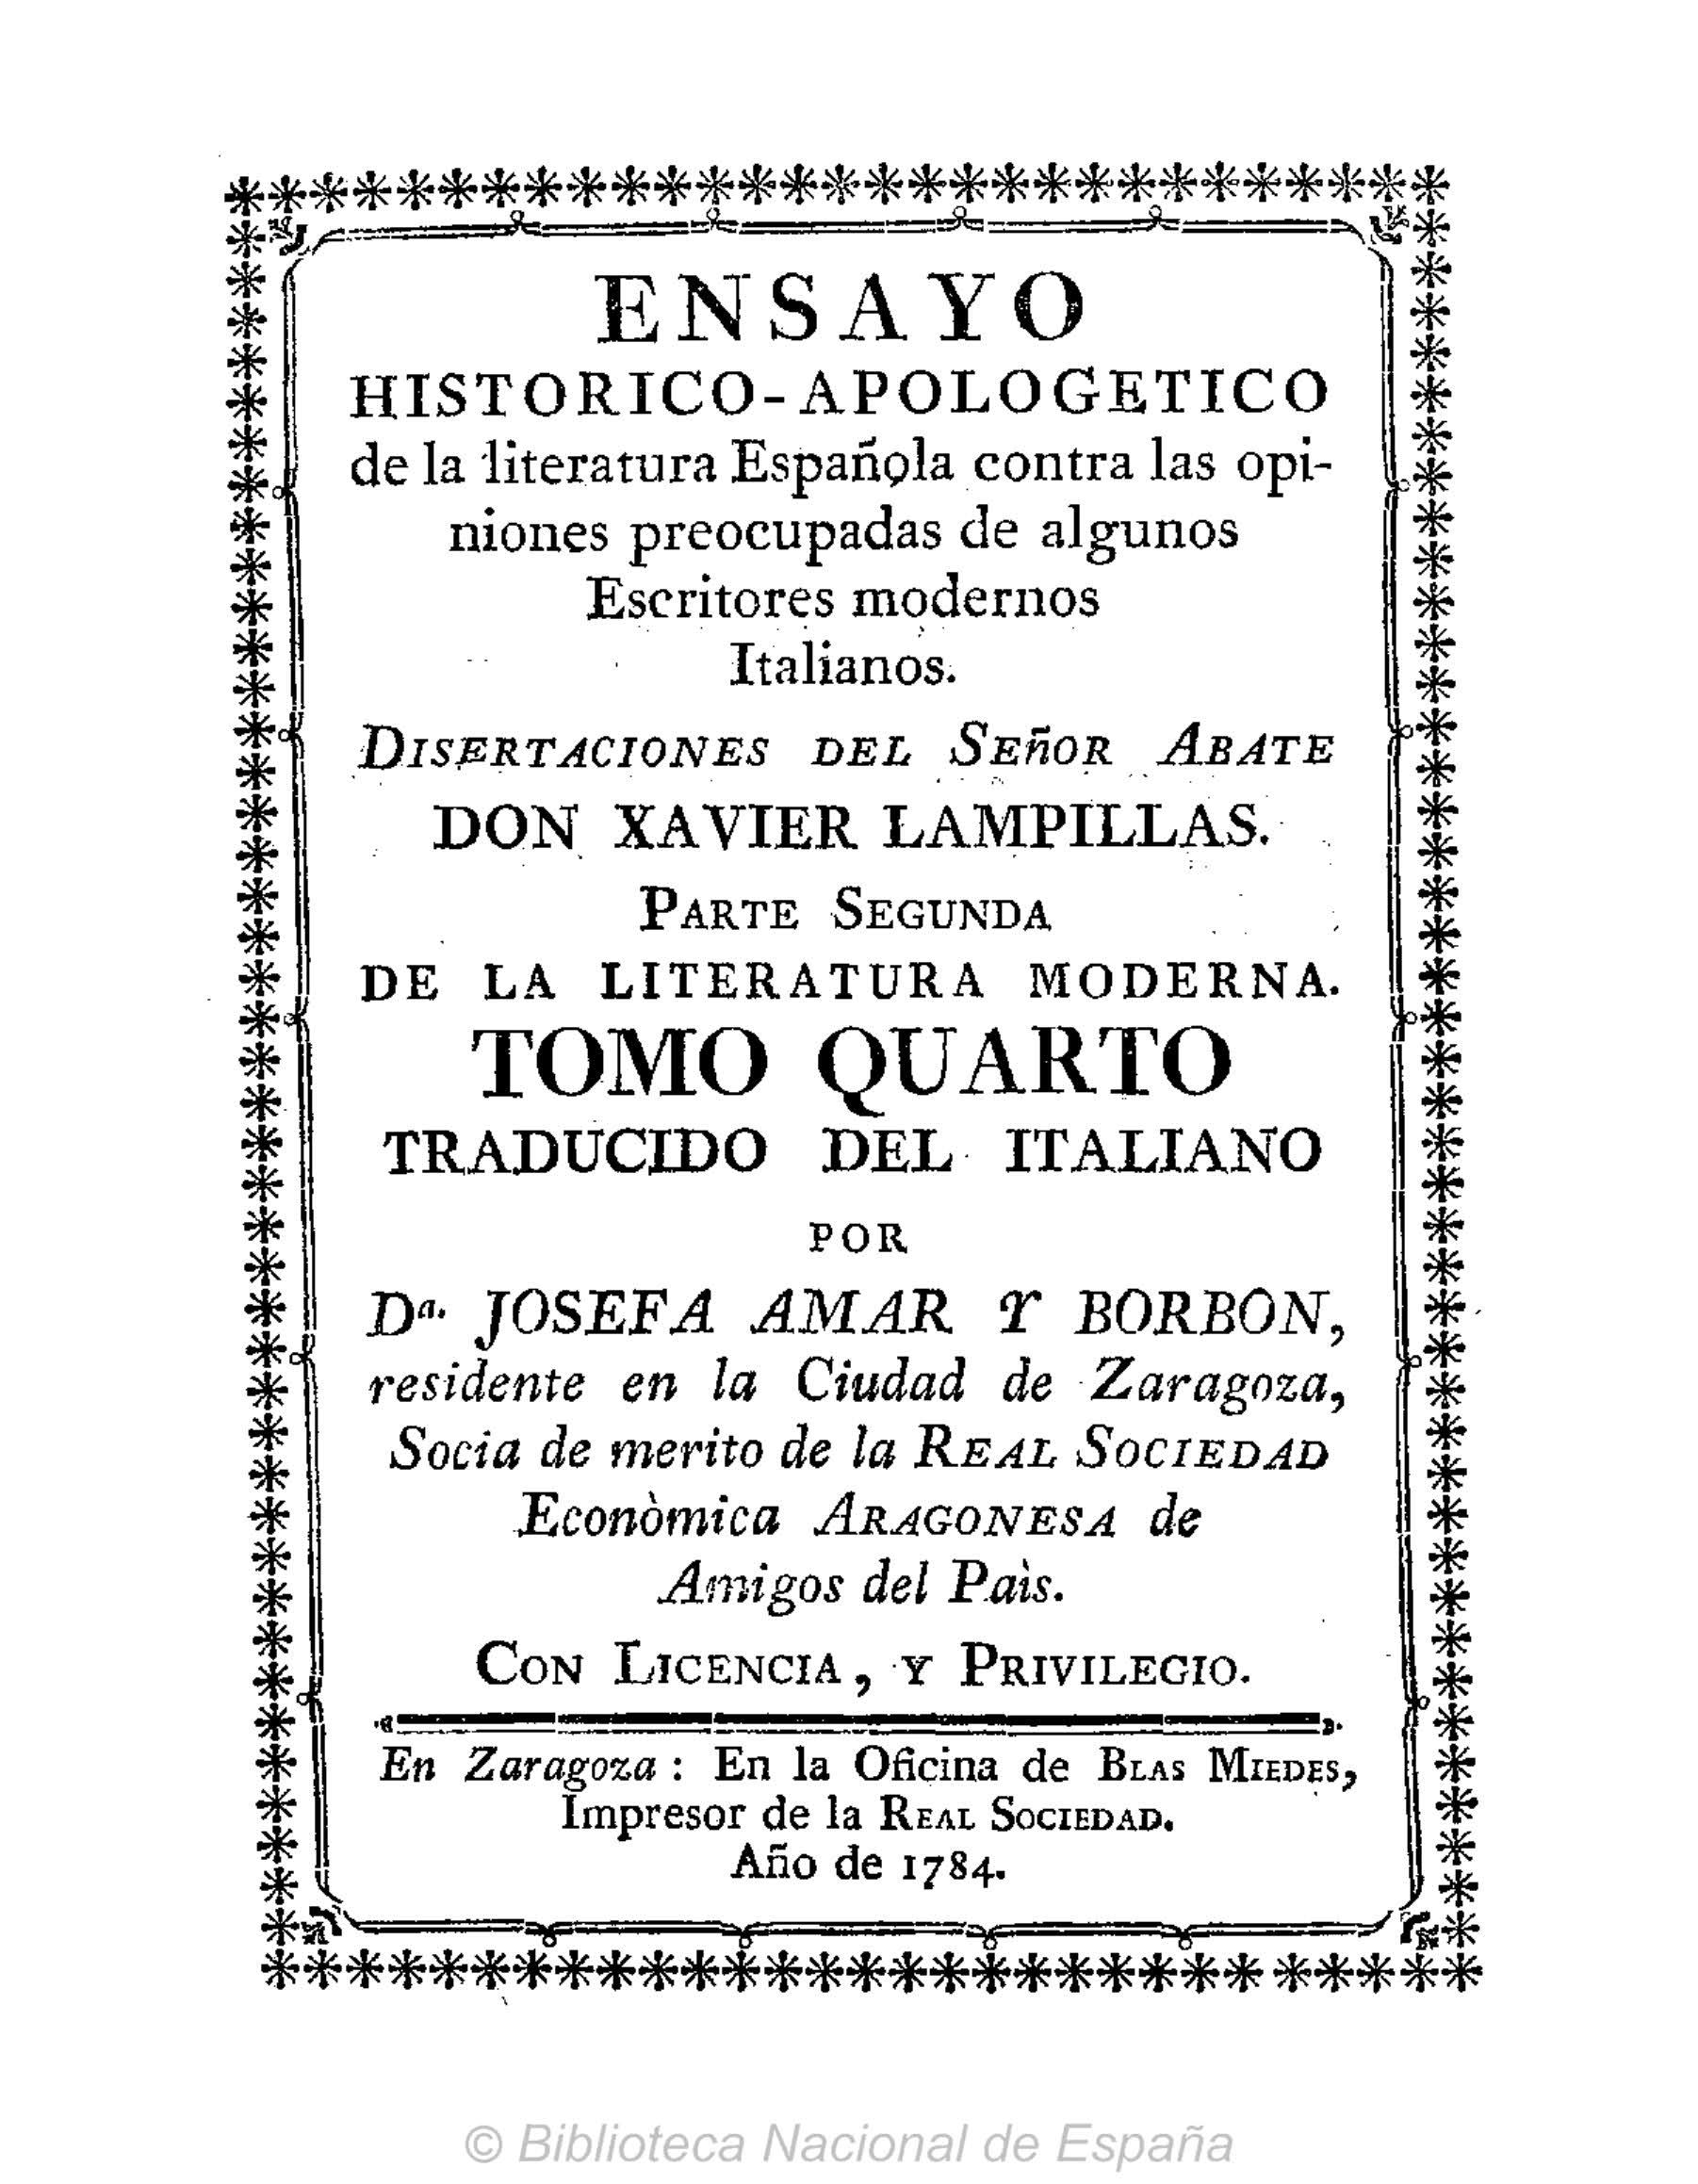 Ensayo histórico-apologético de la literatura española contra las opiniones de algunos escritores modernos italianos, Parte II, Tomo IV